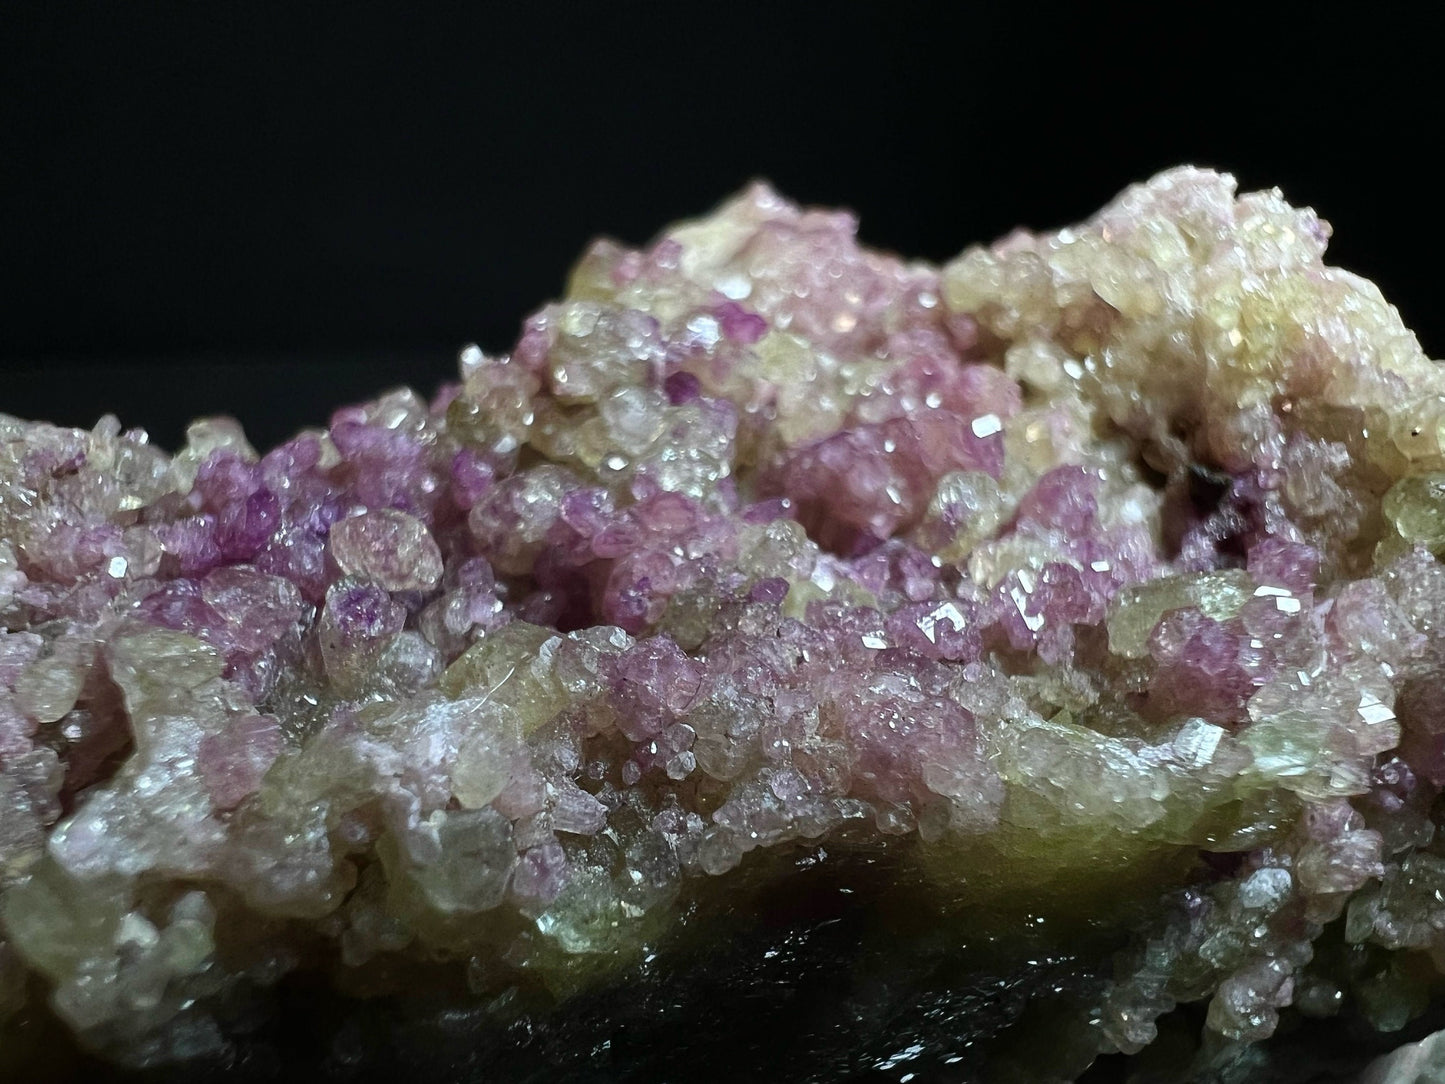 Vesuvianite From Jeffrey Mine, Asbestos, Quebec Canada- Home Decor, Collectors Piece, Gift, Gem, Crystal